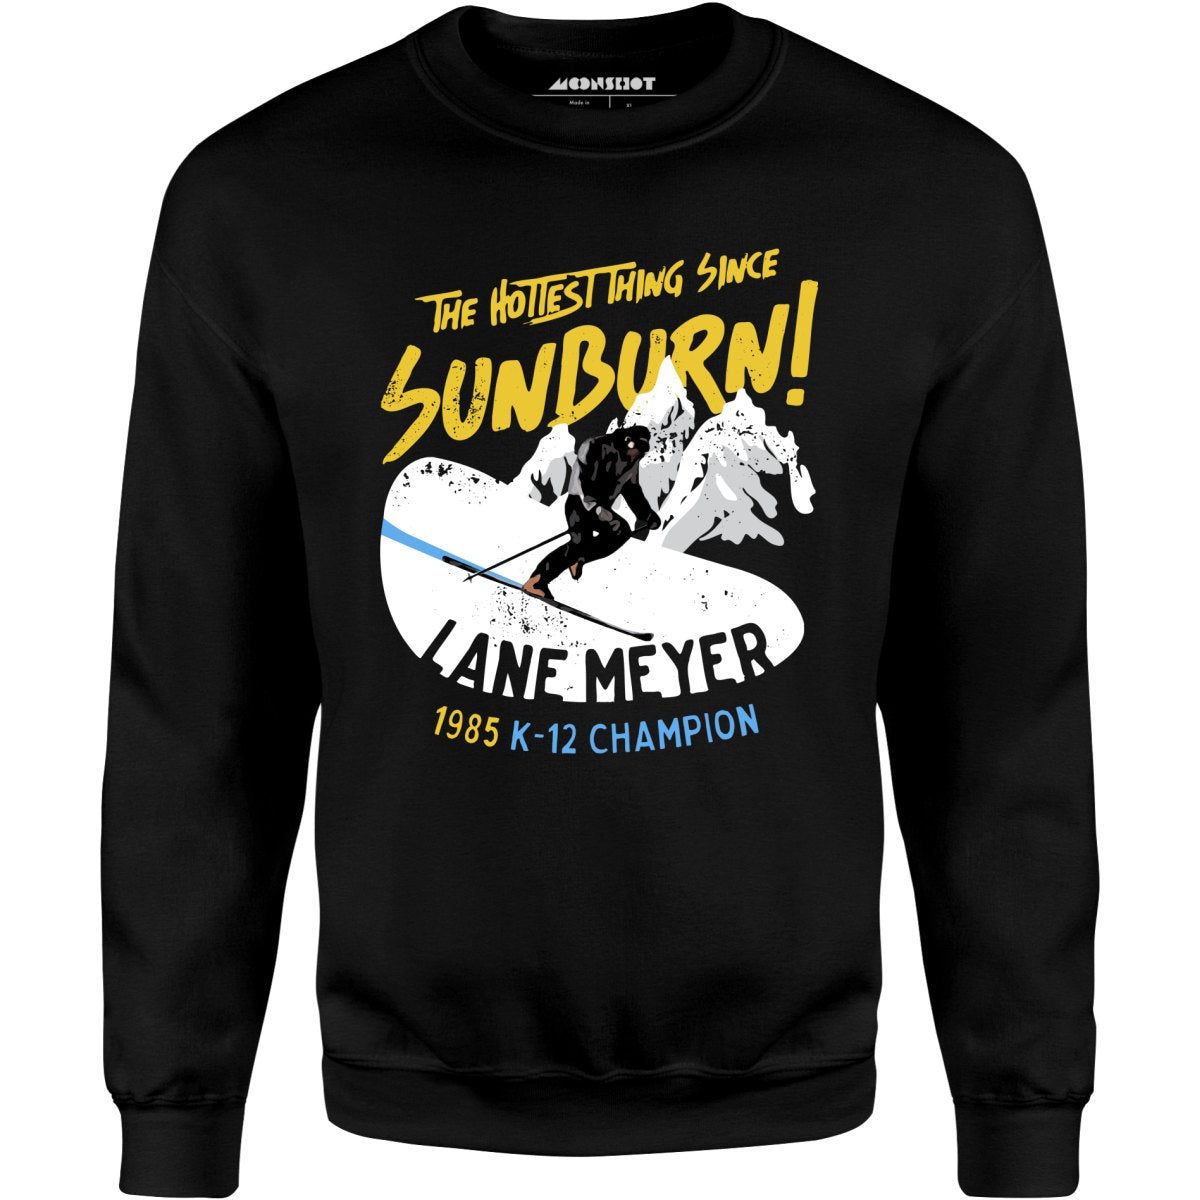 Lane Meyer - The Hottest Thing Since Sunburn - Unisex Sweatshirt